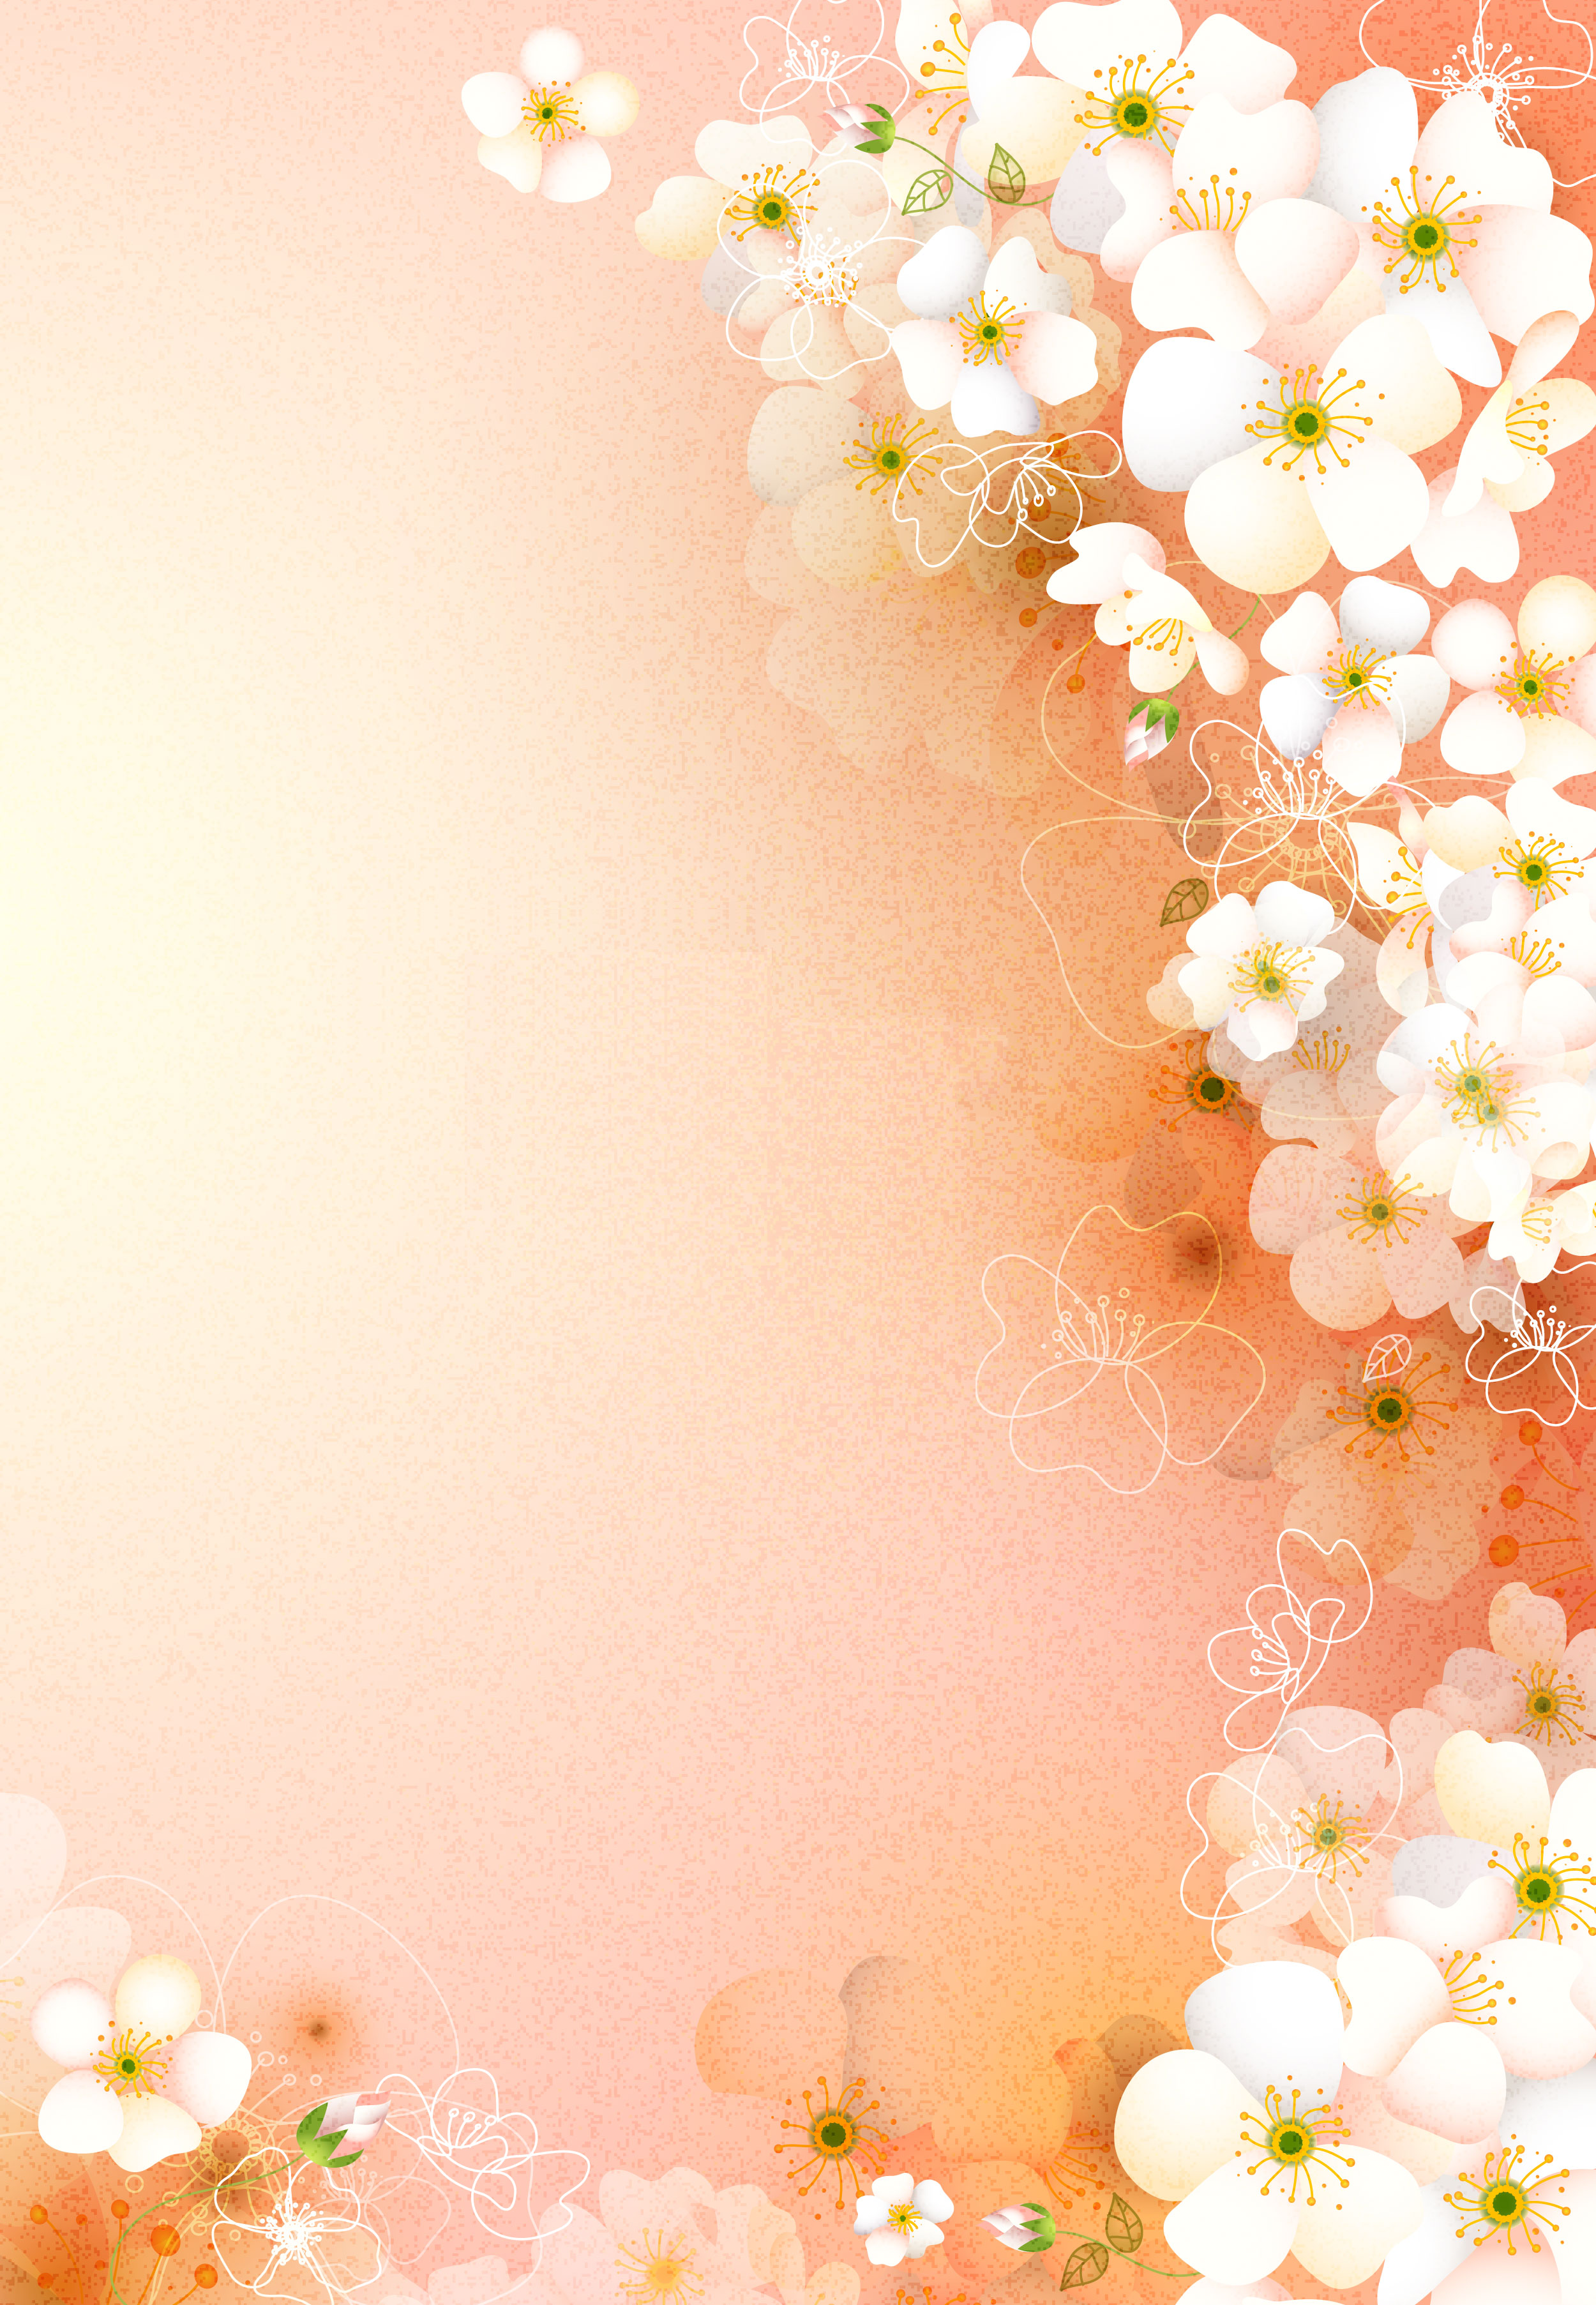 桜 さくら の画像 イラスト フリー素材 No 057 桜壁紙 白い花 たくさん